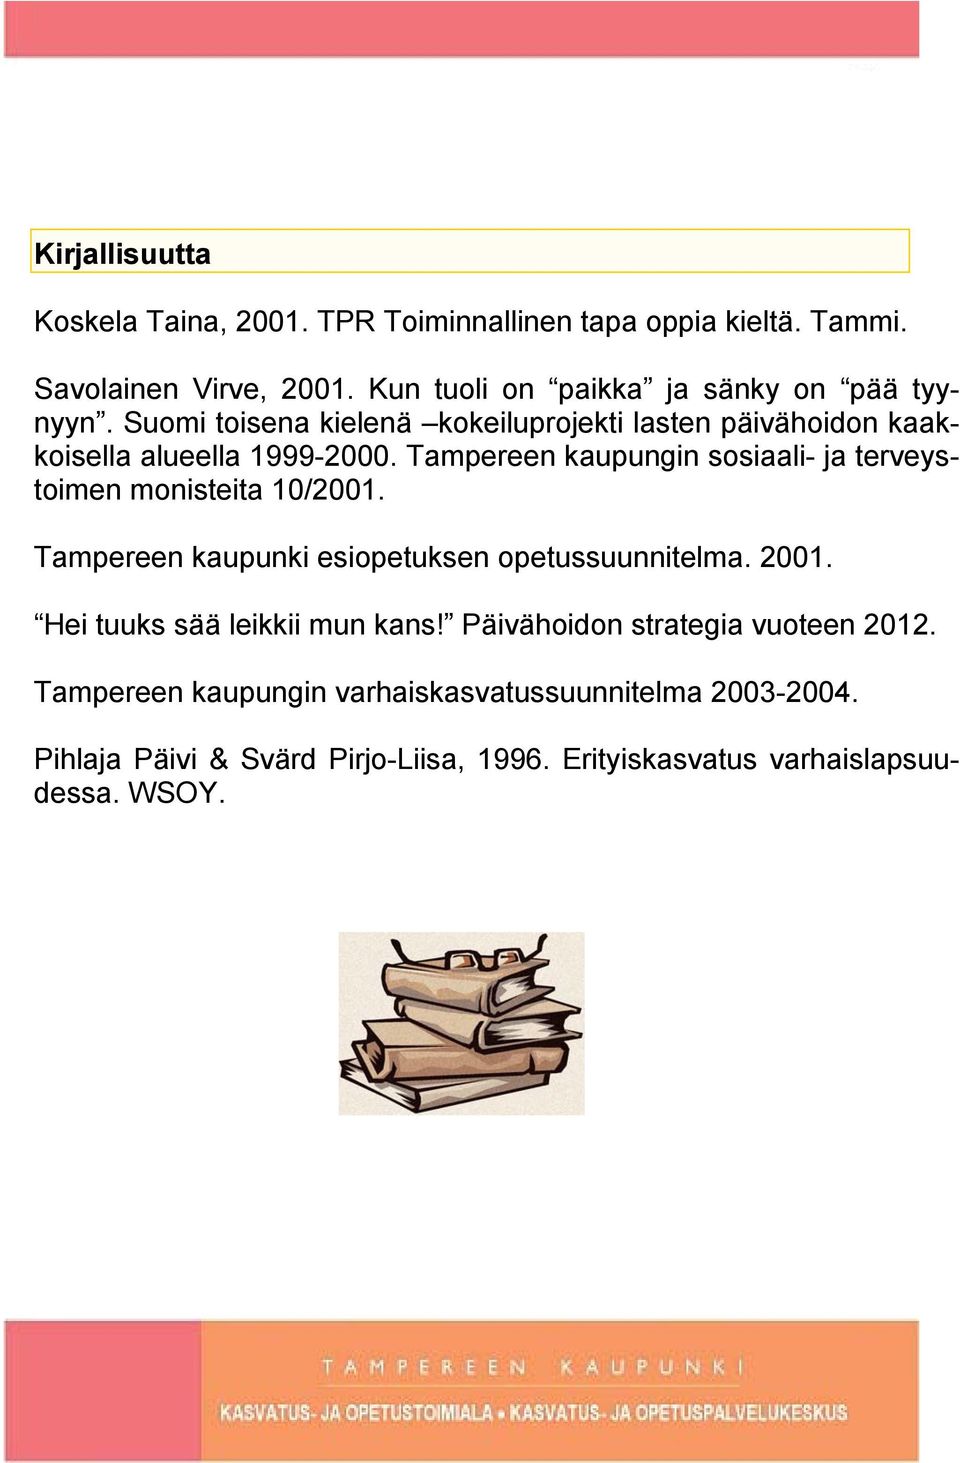 Tampereen kaupungin sosiaali- ja terveystoimen monisteita 10/2001. Tampereen kaupunki esiopetuksen opetussuunnitelma. 2001.